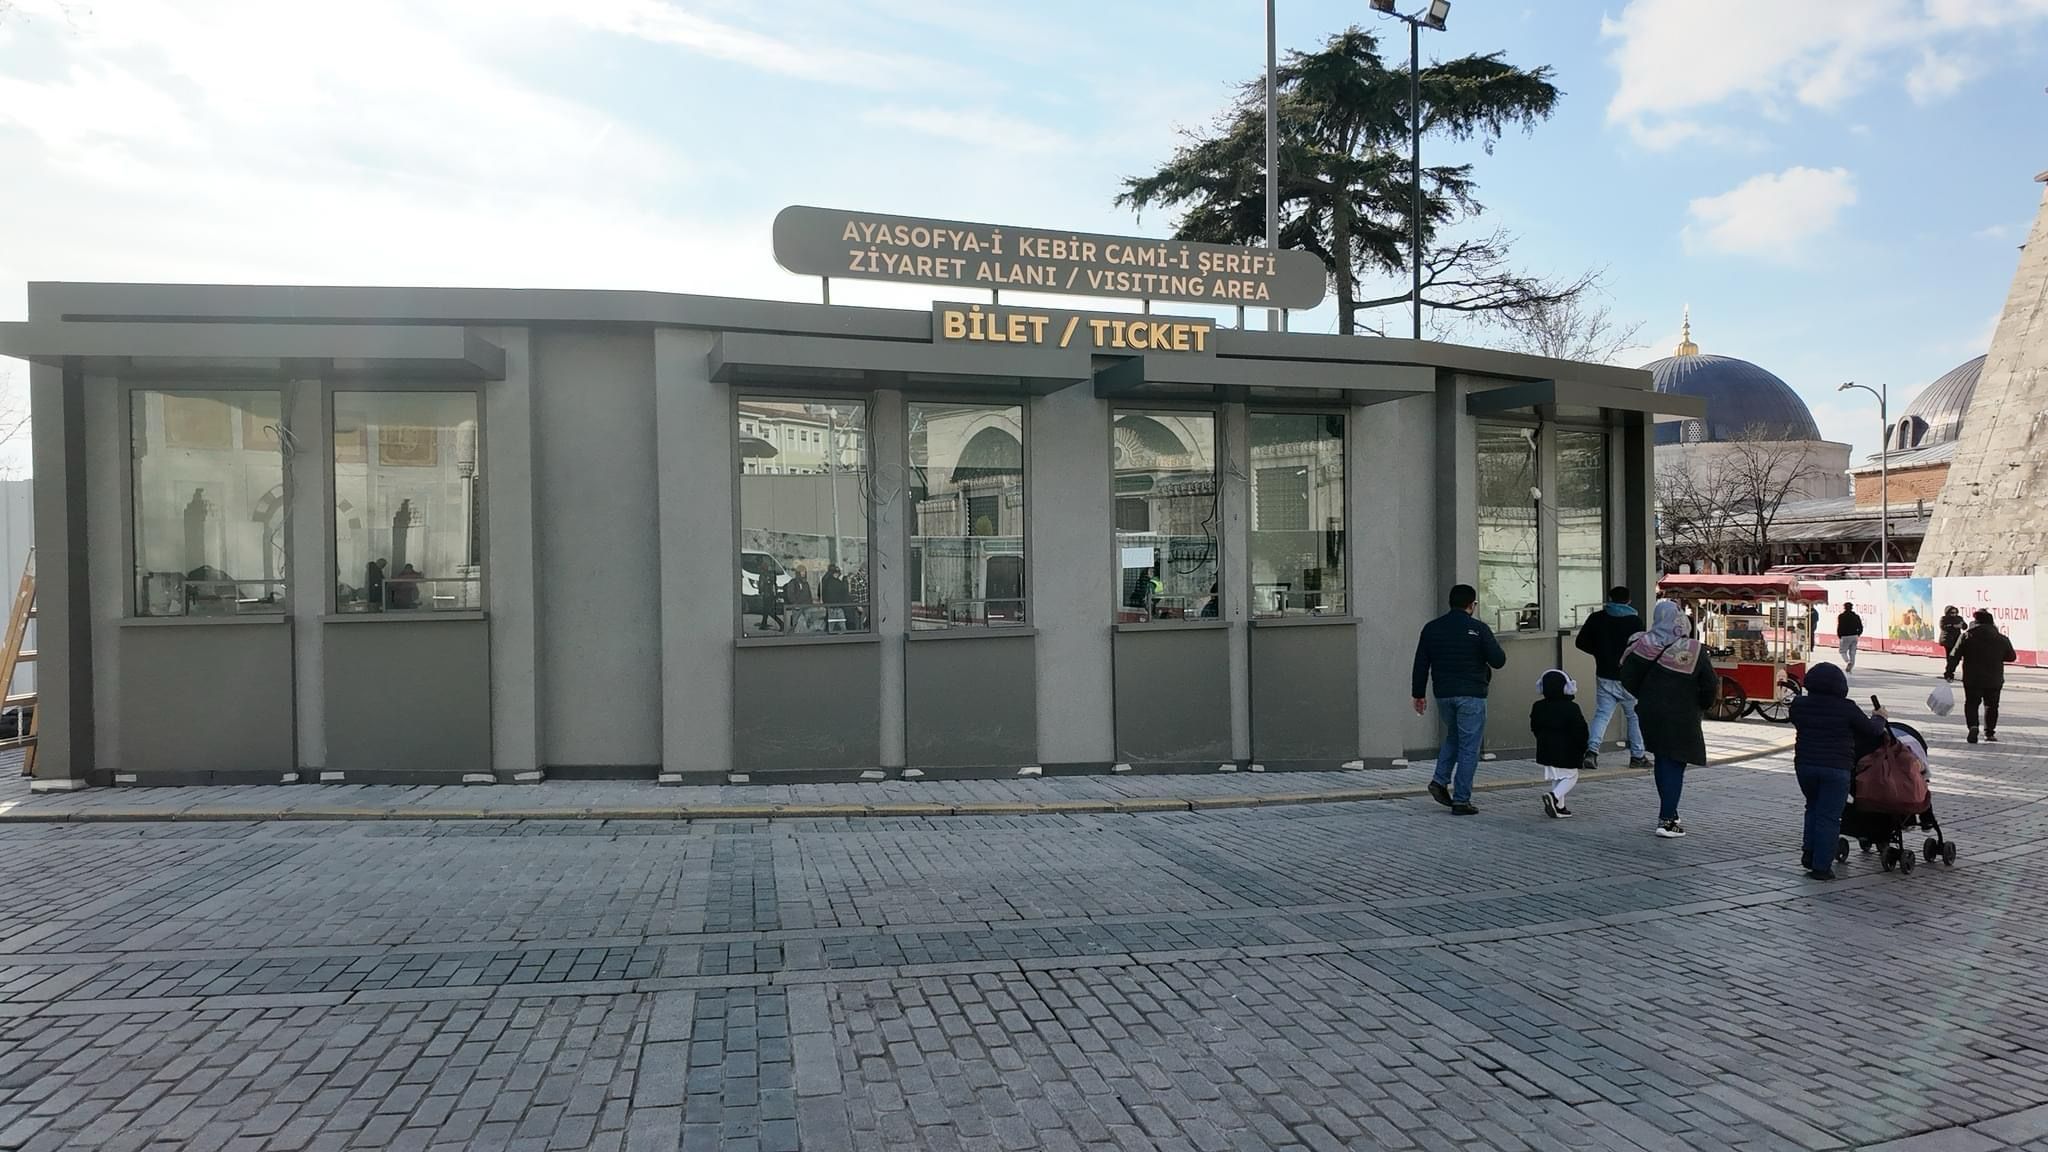 Ayasofya Mosque // Hagia Sophia Mosque Entrance fee is 25 Euro